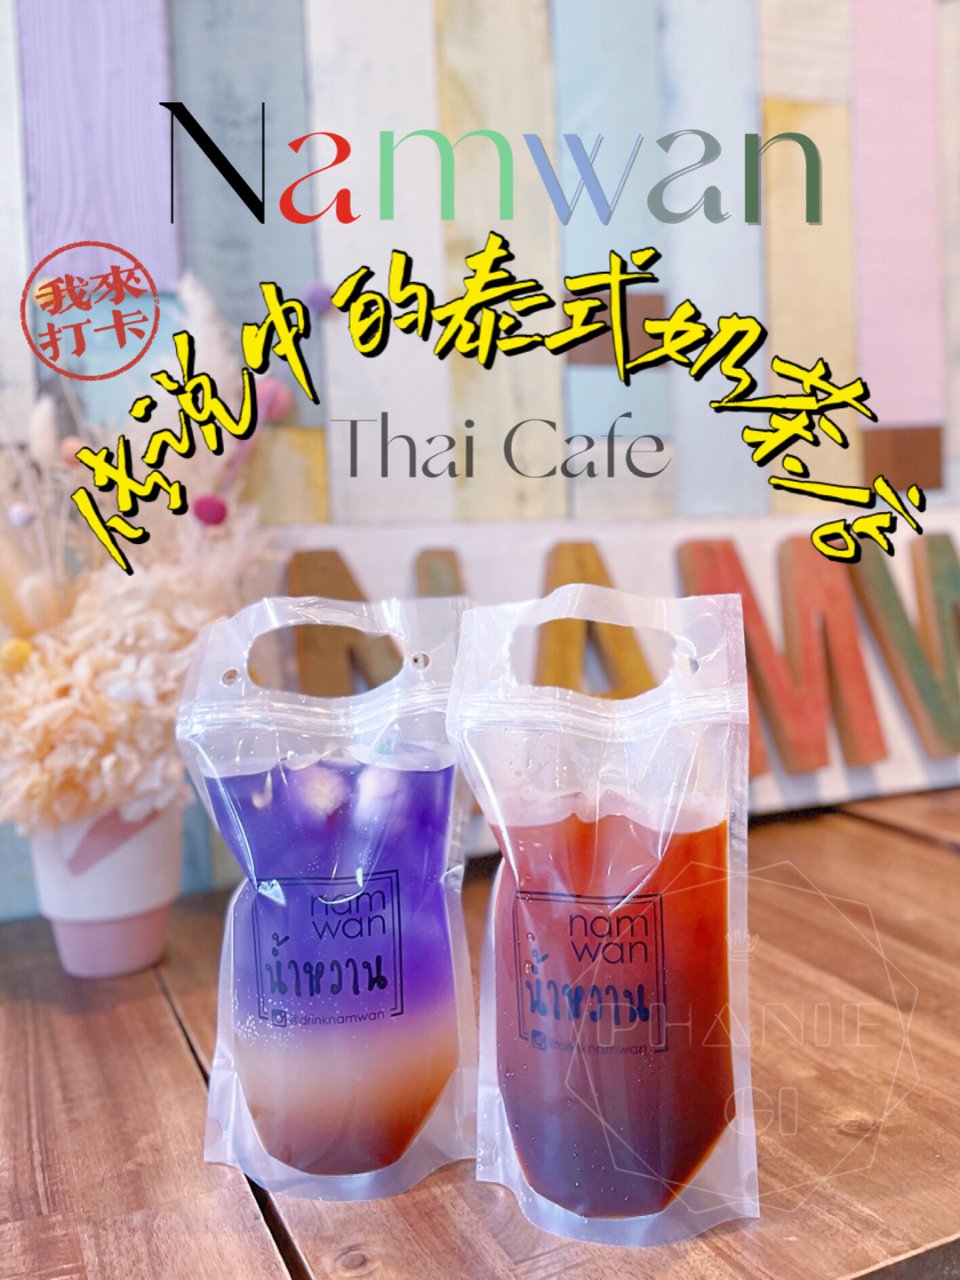 多伦多网红泰式奶茶店Namwan终于去打...